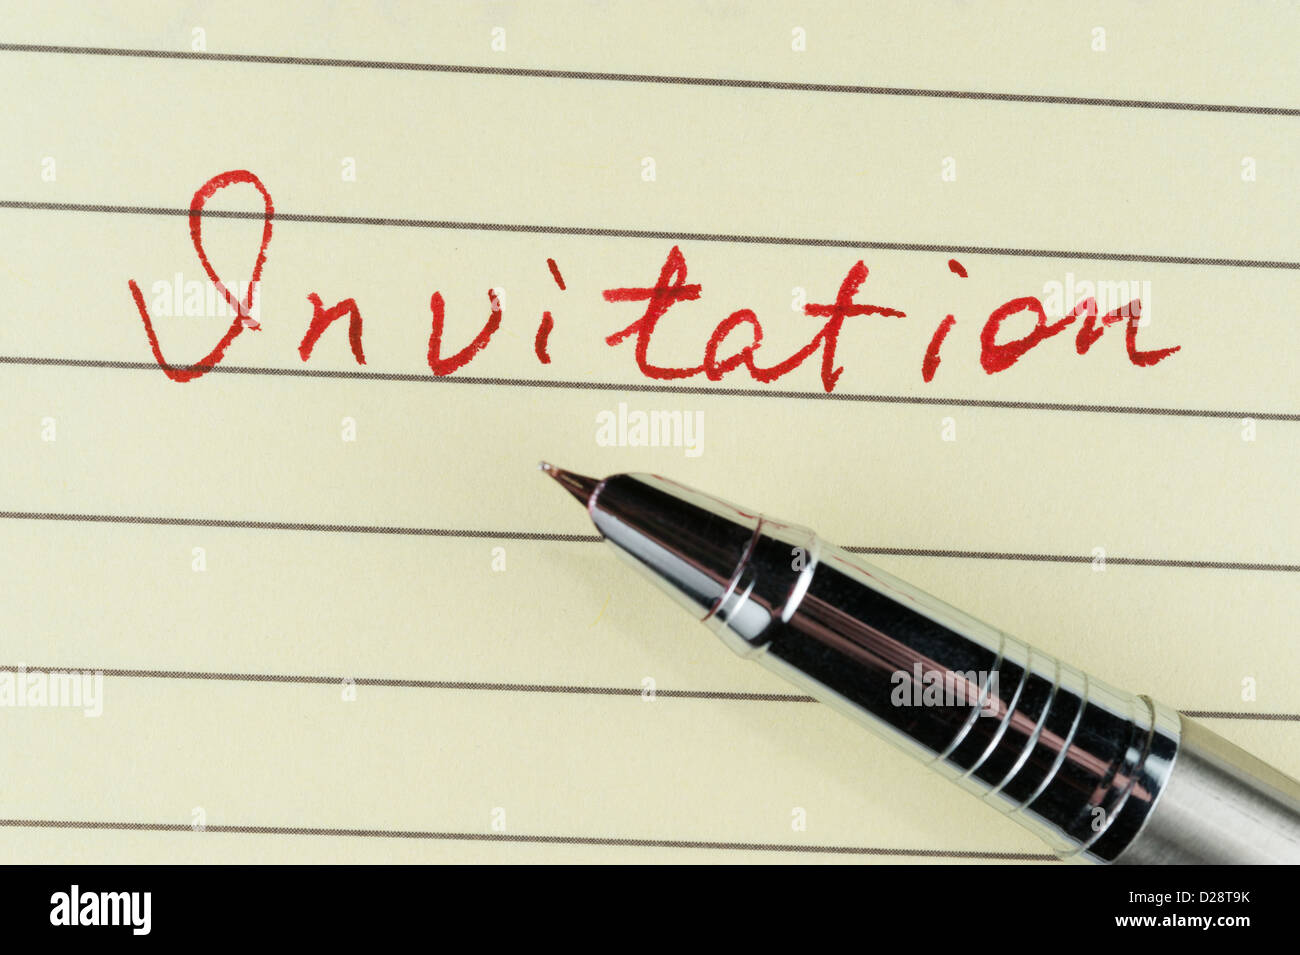 Einladung-Wort auf Liniertes Papier mit einem Stift darauf geschrieben Stockfoto